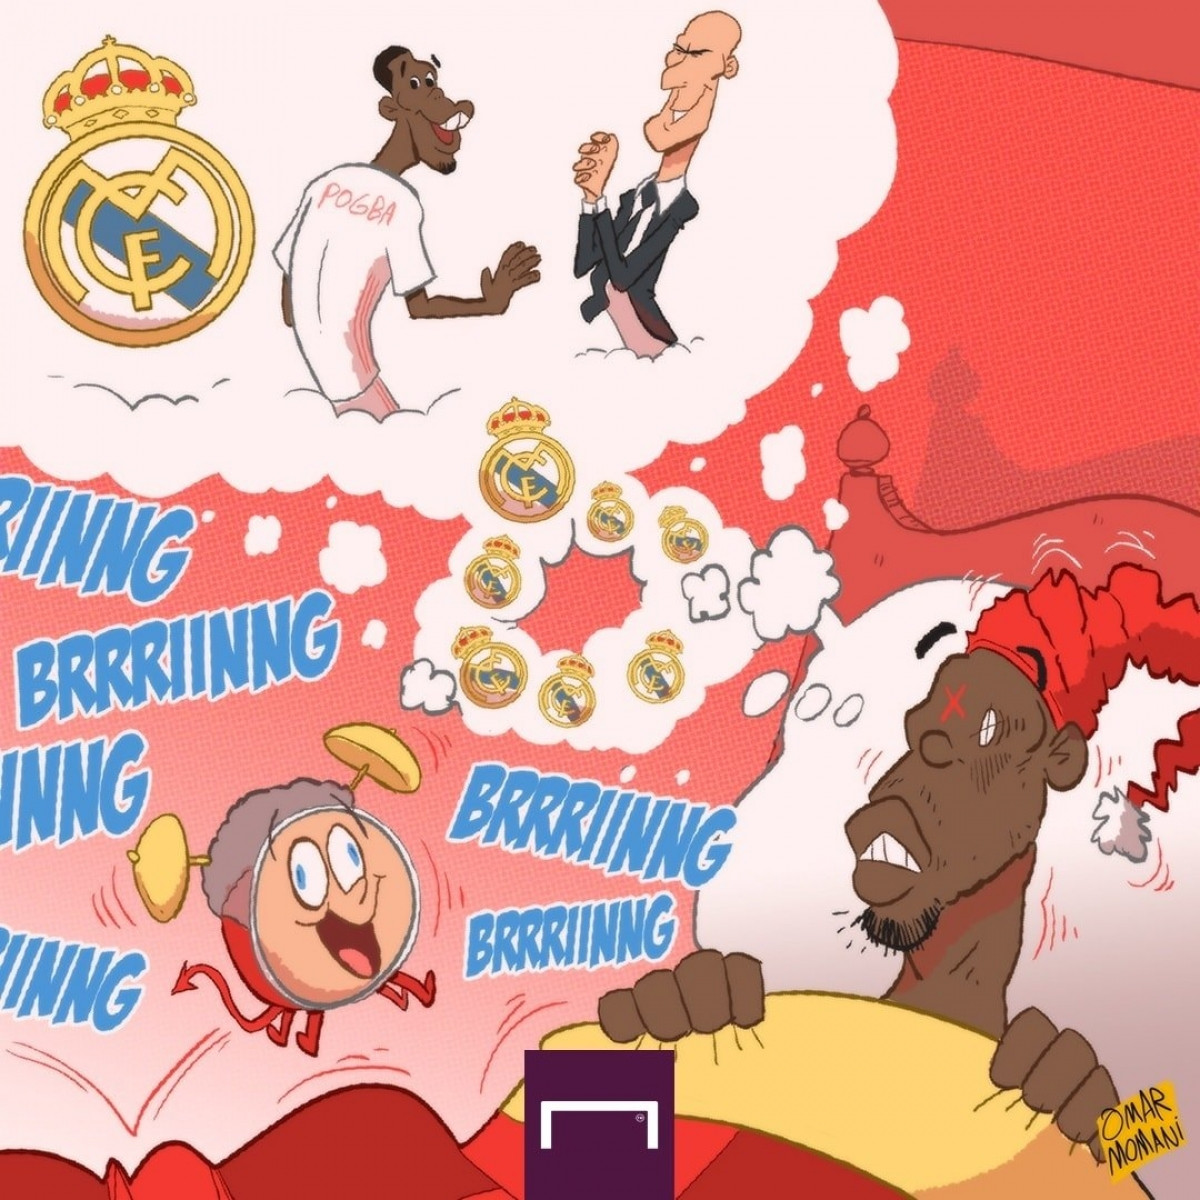 Paul Pogba ôm giấc mơ khoác áo Real Madrid. (Ảnh: Omar Momani)